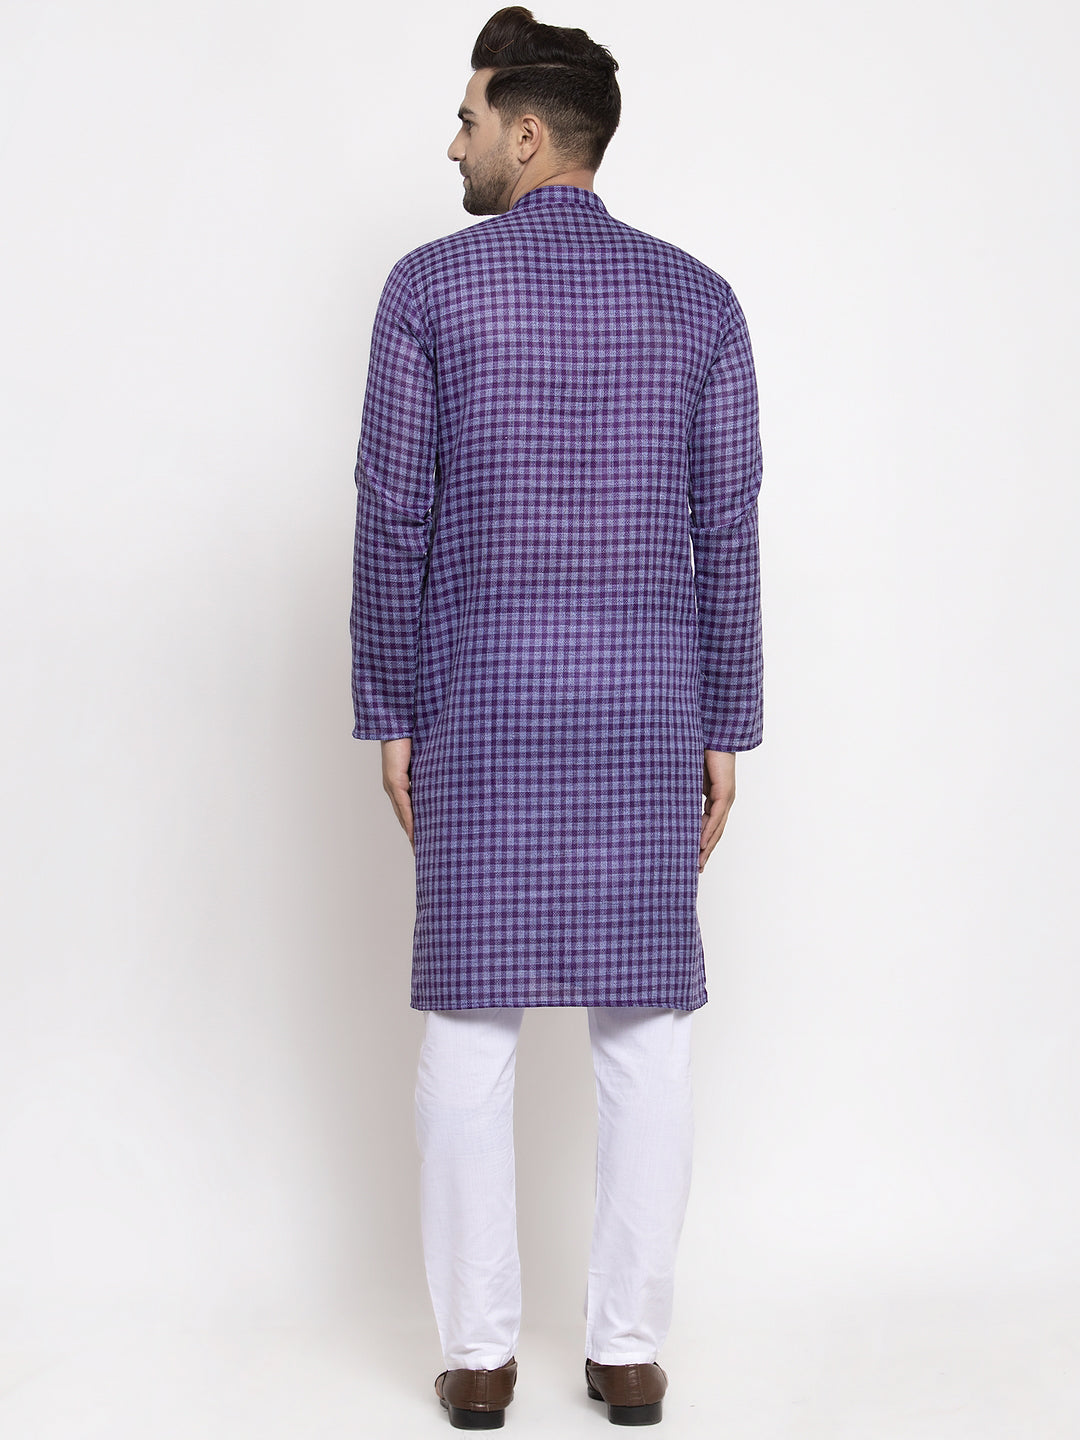 Jompers Men's Purple Woven Kurta Payjama Sets